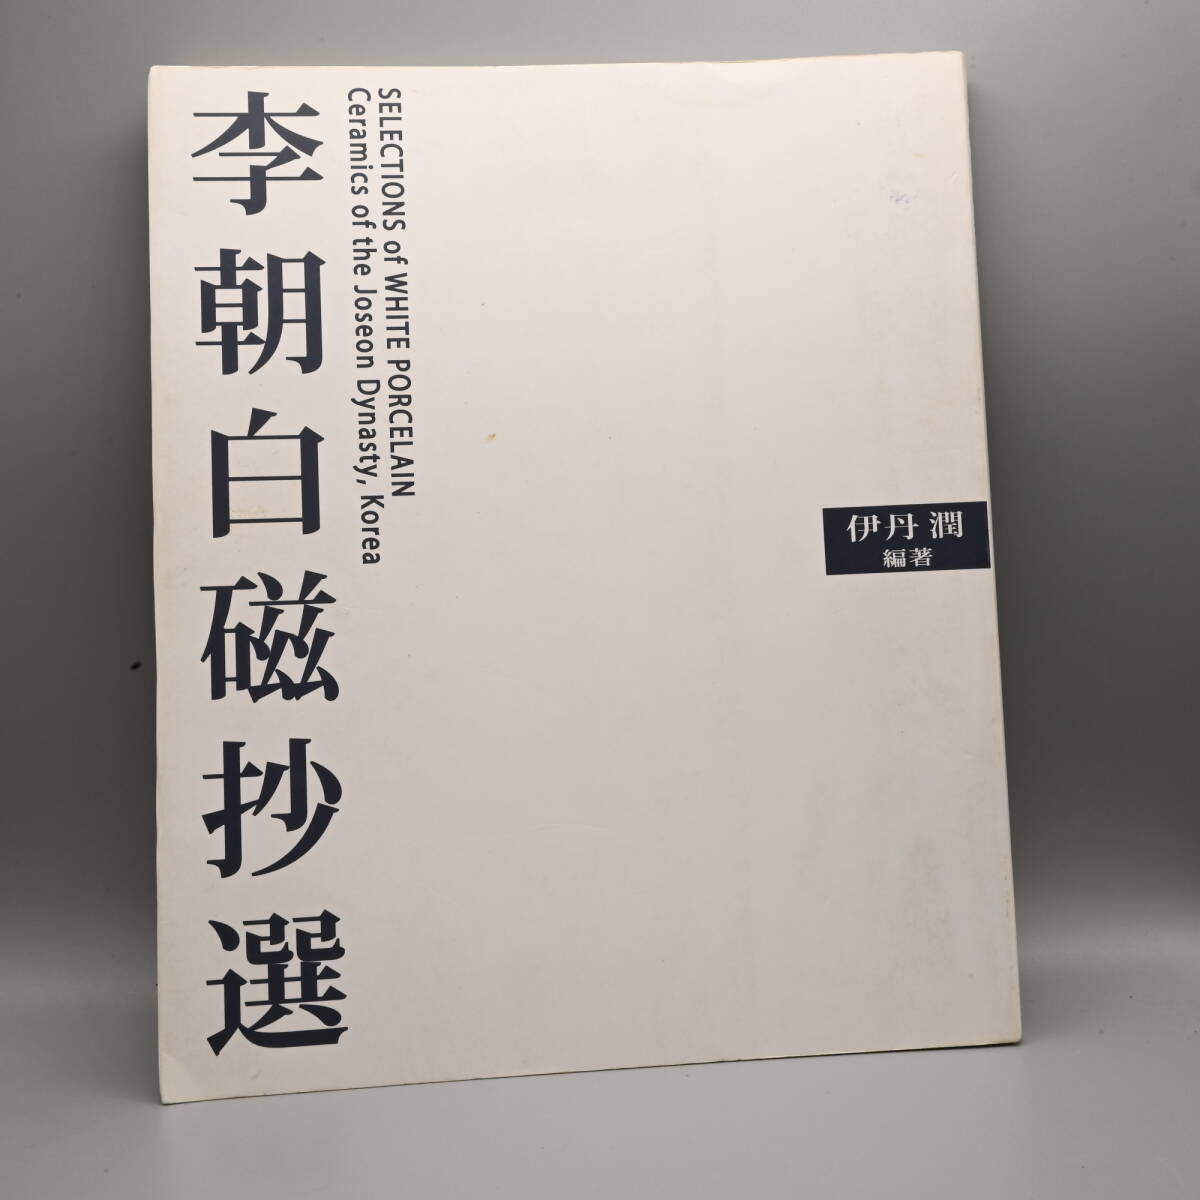 〇0617 書籍「李朝白磁抄選」伊丹潤 2009 HANEGI MUSEUM 陶磁器 やきもの 朝鮮美術の画像1